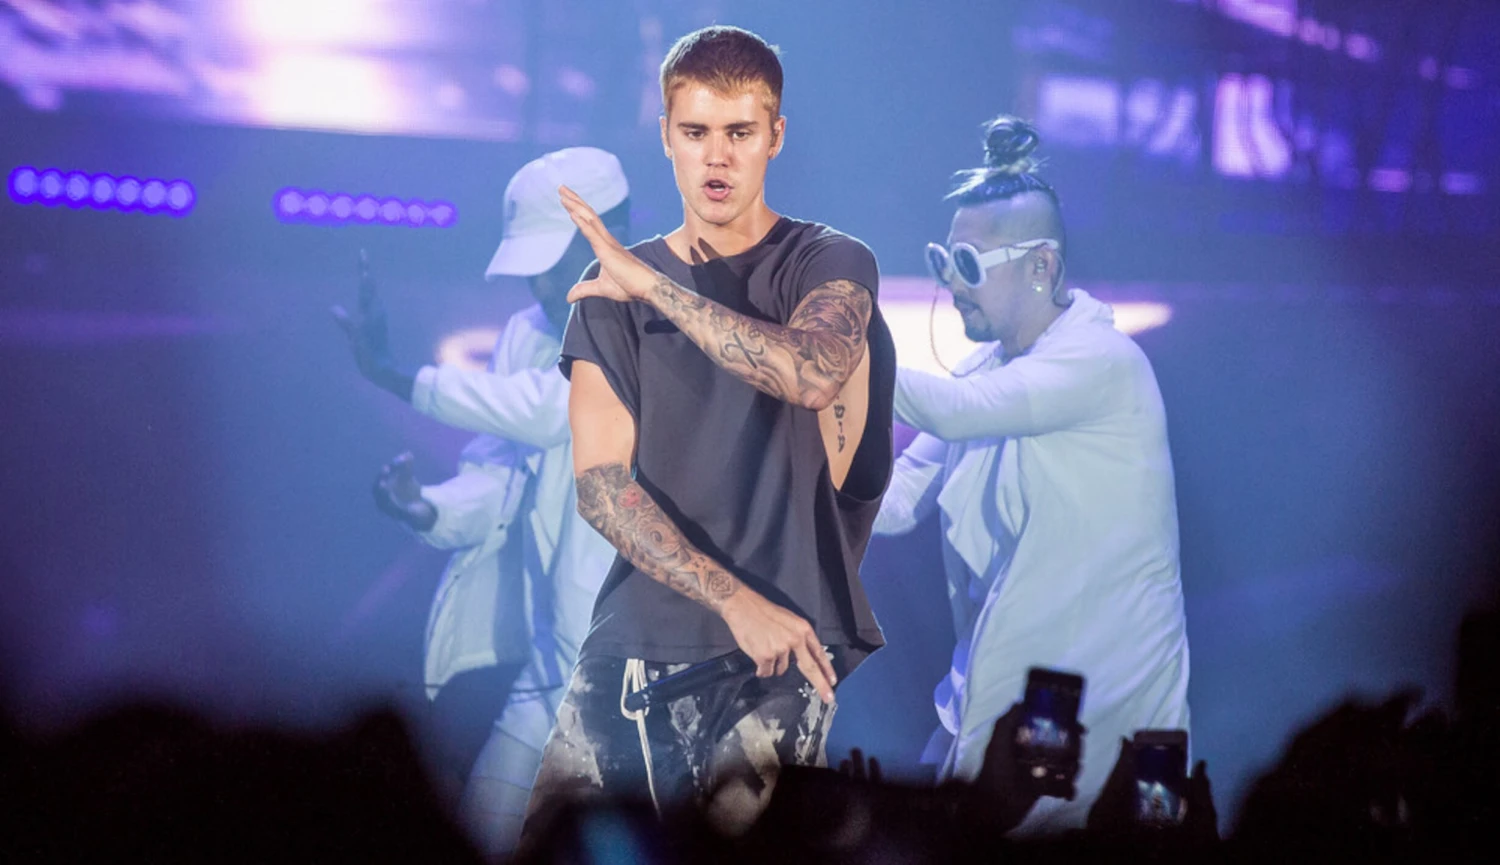 Bieber brojí proti H&M. Značku nazval odpadem a žádá fanoušky o bojkot